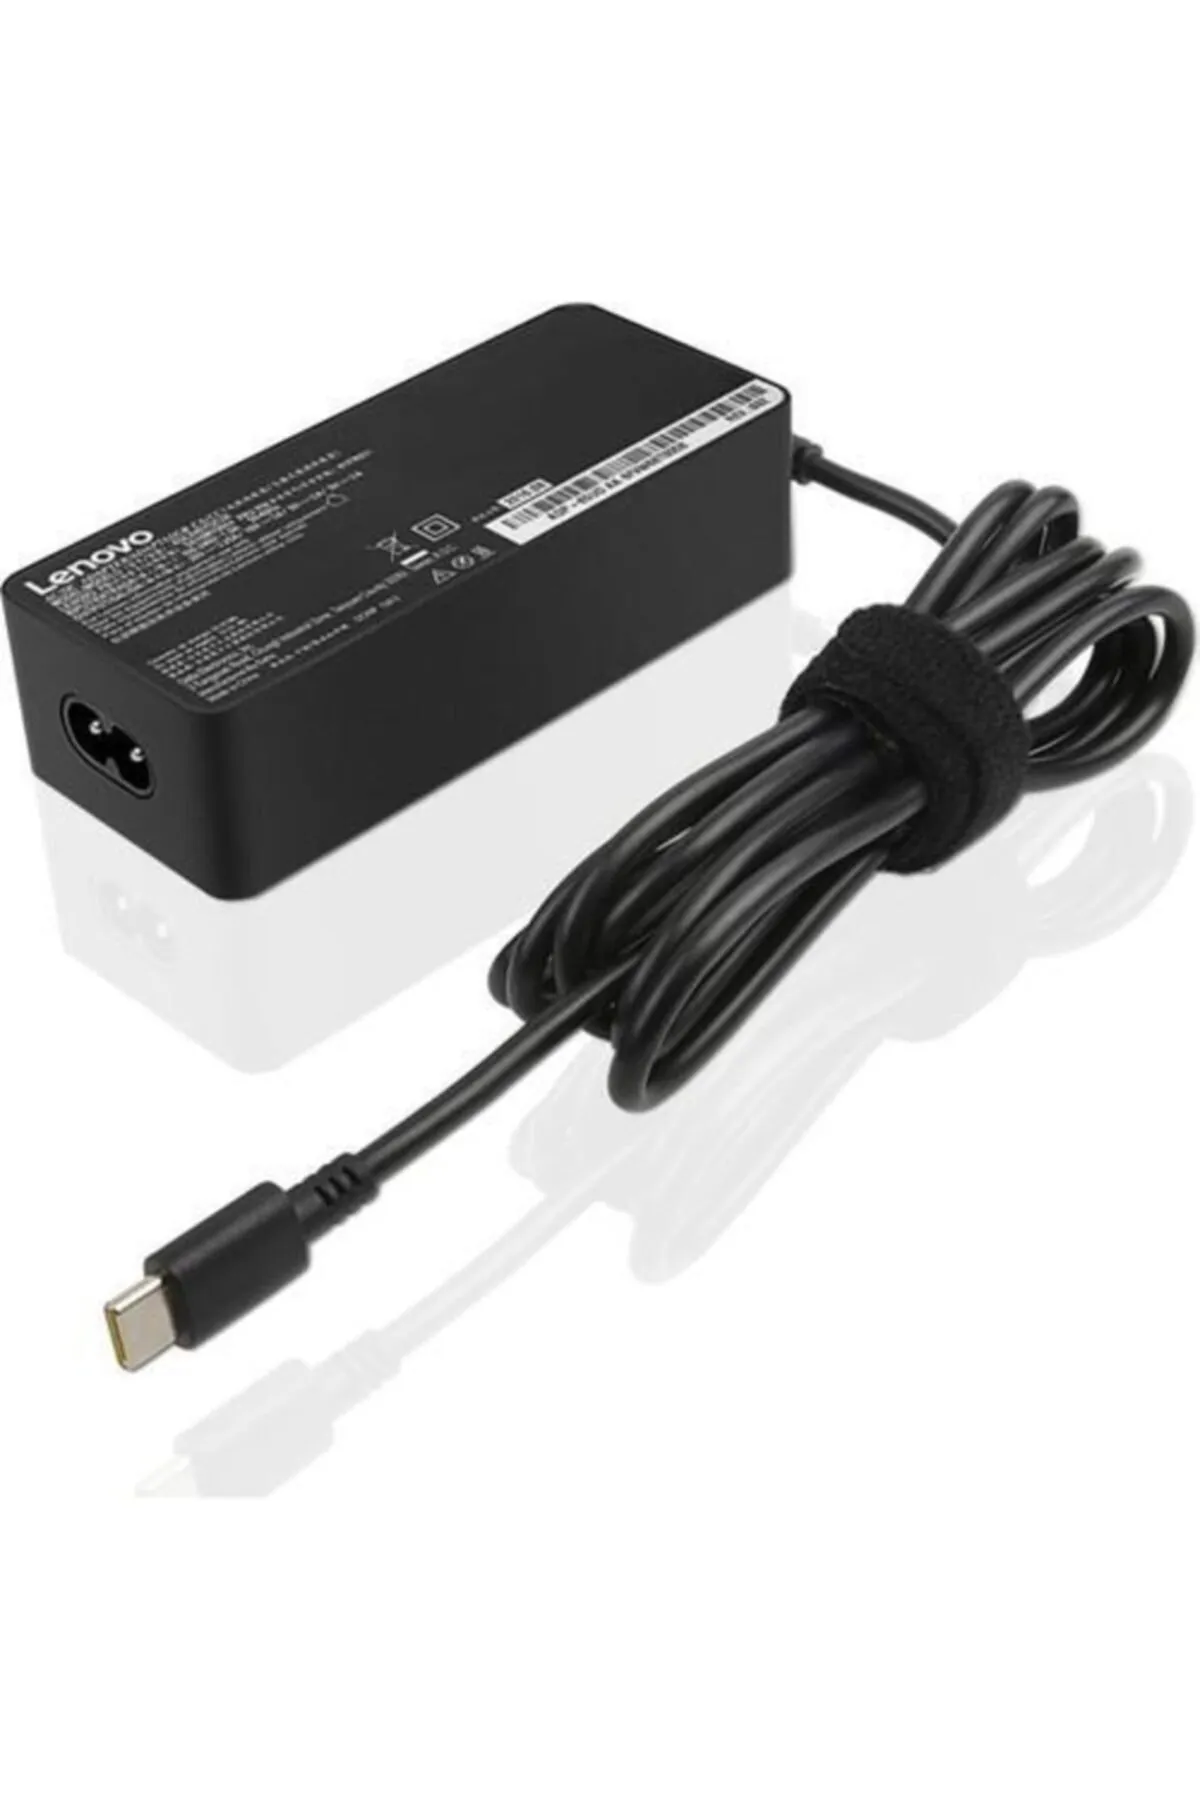 Thinkpad 65W Standard AC Adapter (USB Type-C)- EU - 4X20M26272